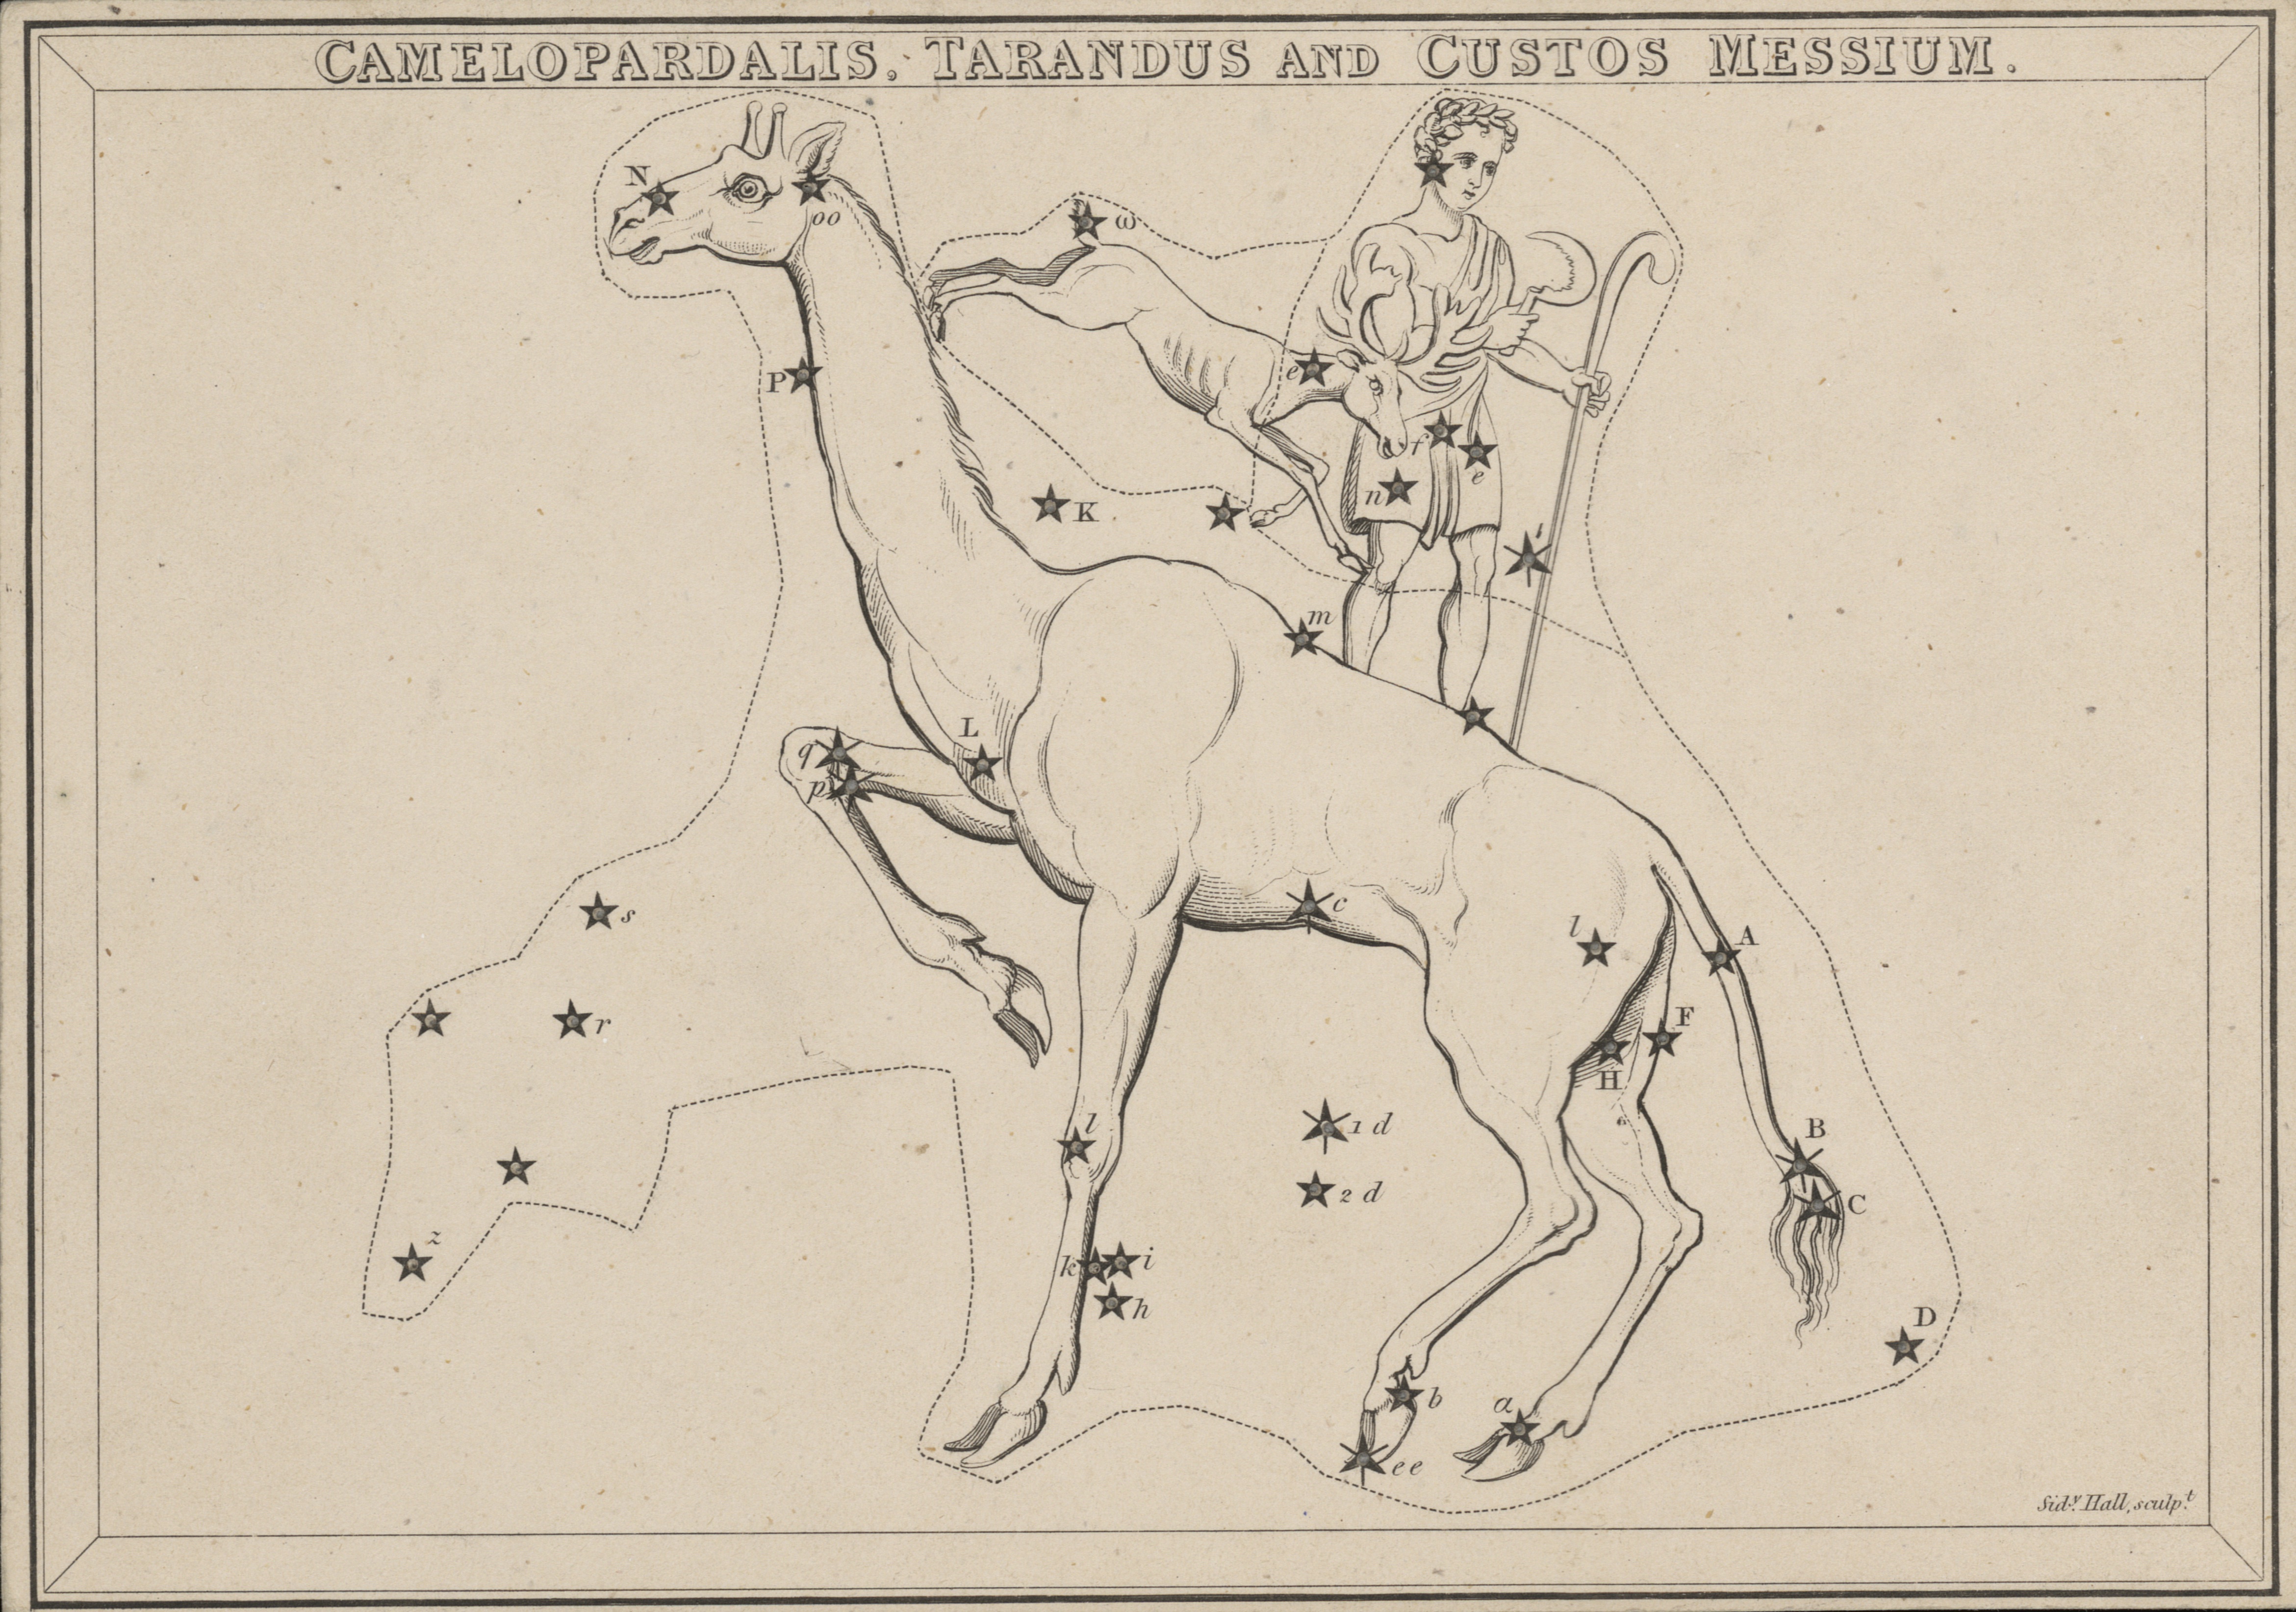 UM-1825-Camelopardelis